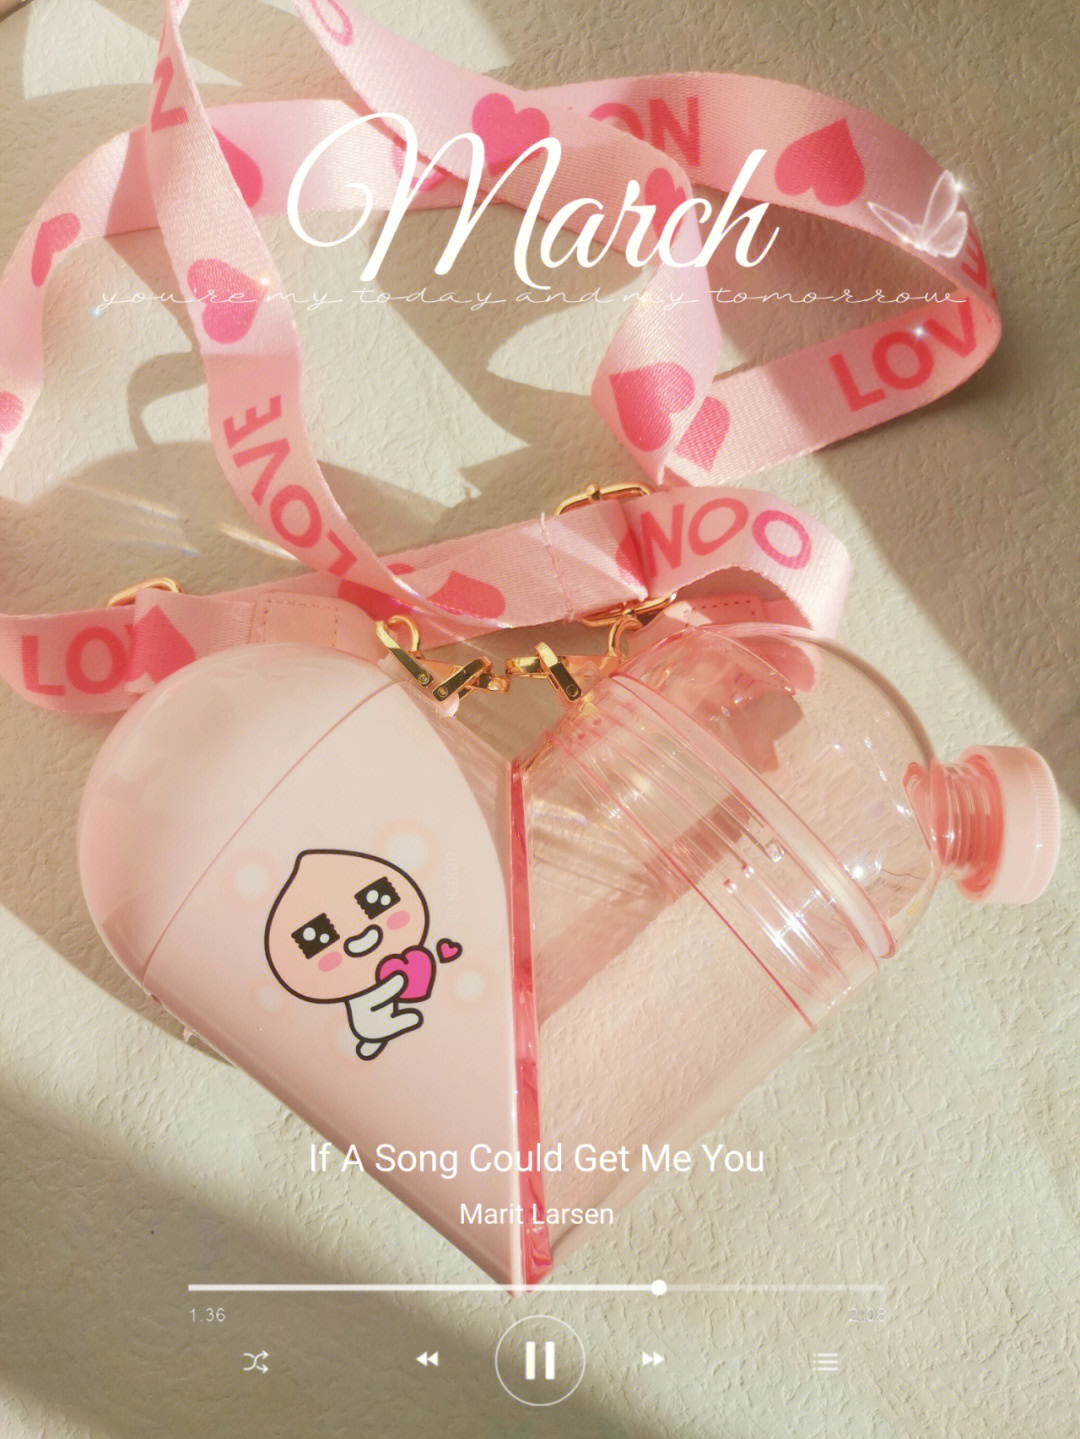 爱粉色,让我爱上喝水的理由就是一个可可爱爱的水杯,胶囊心心自由切换